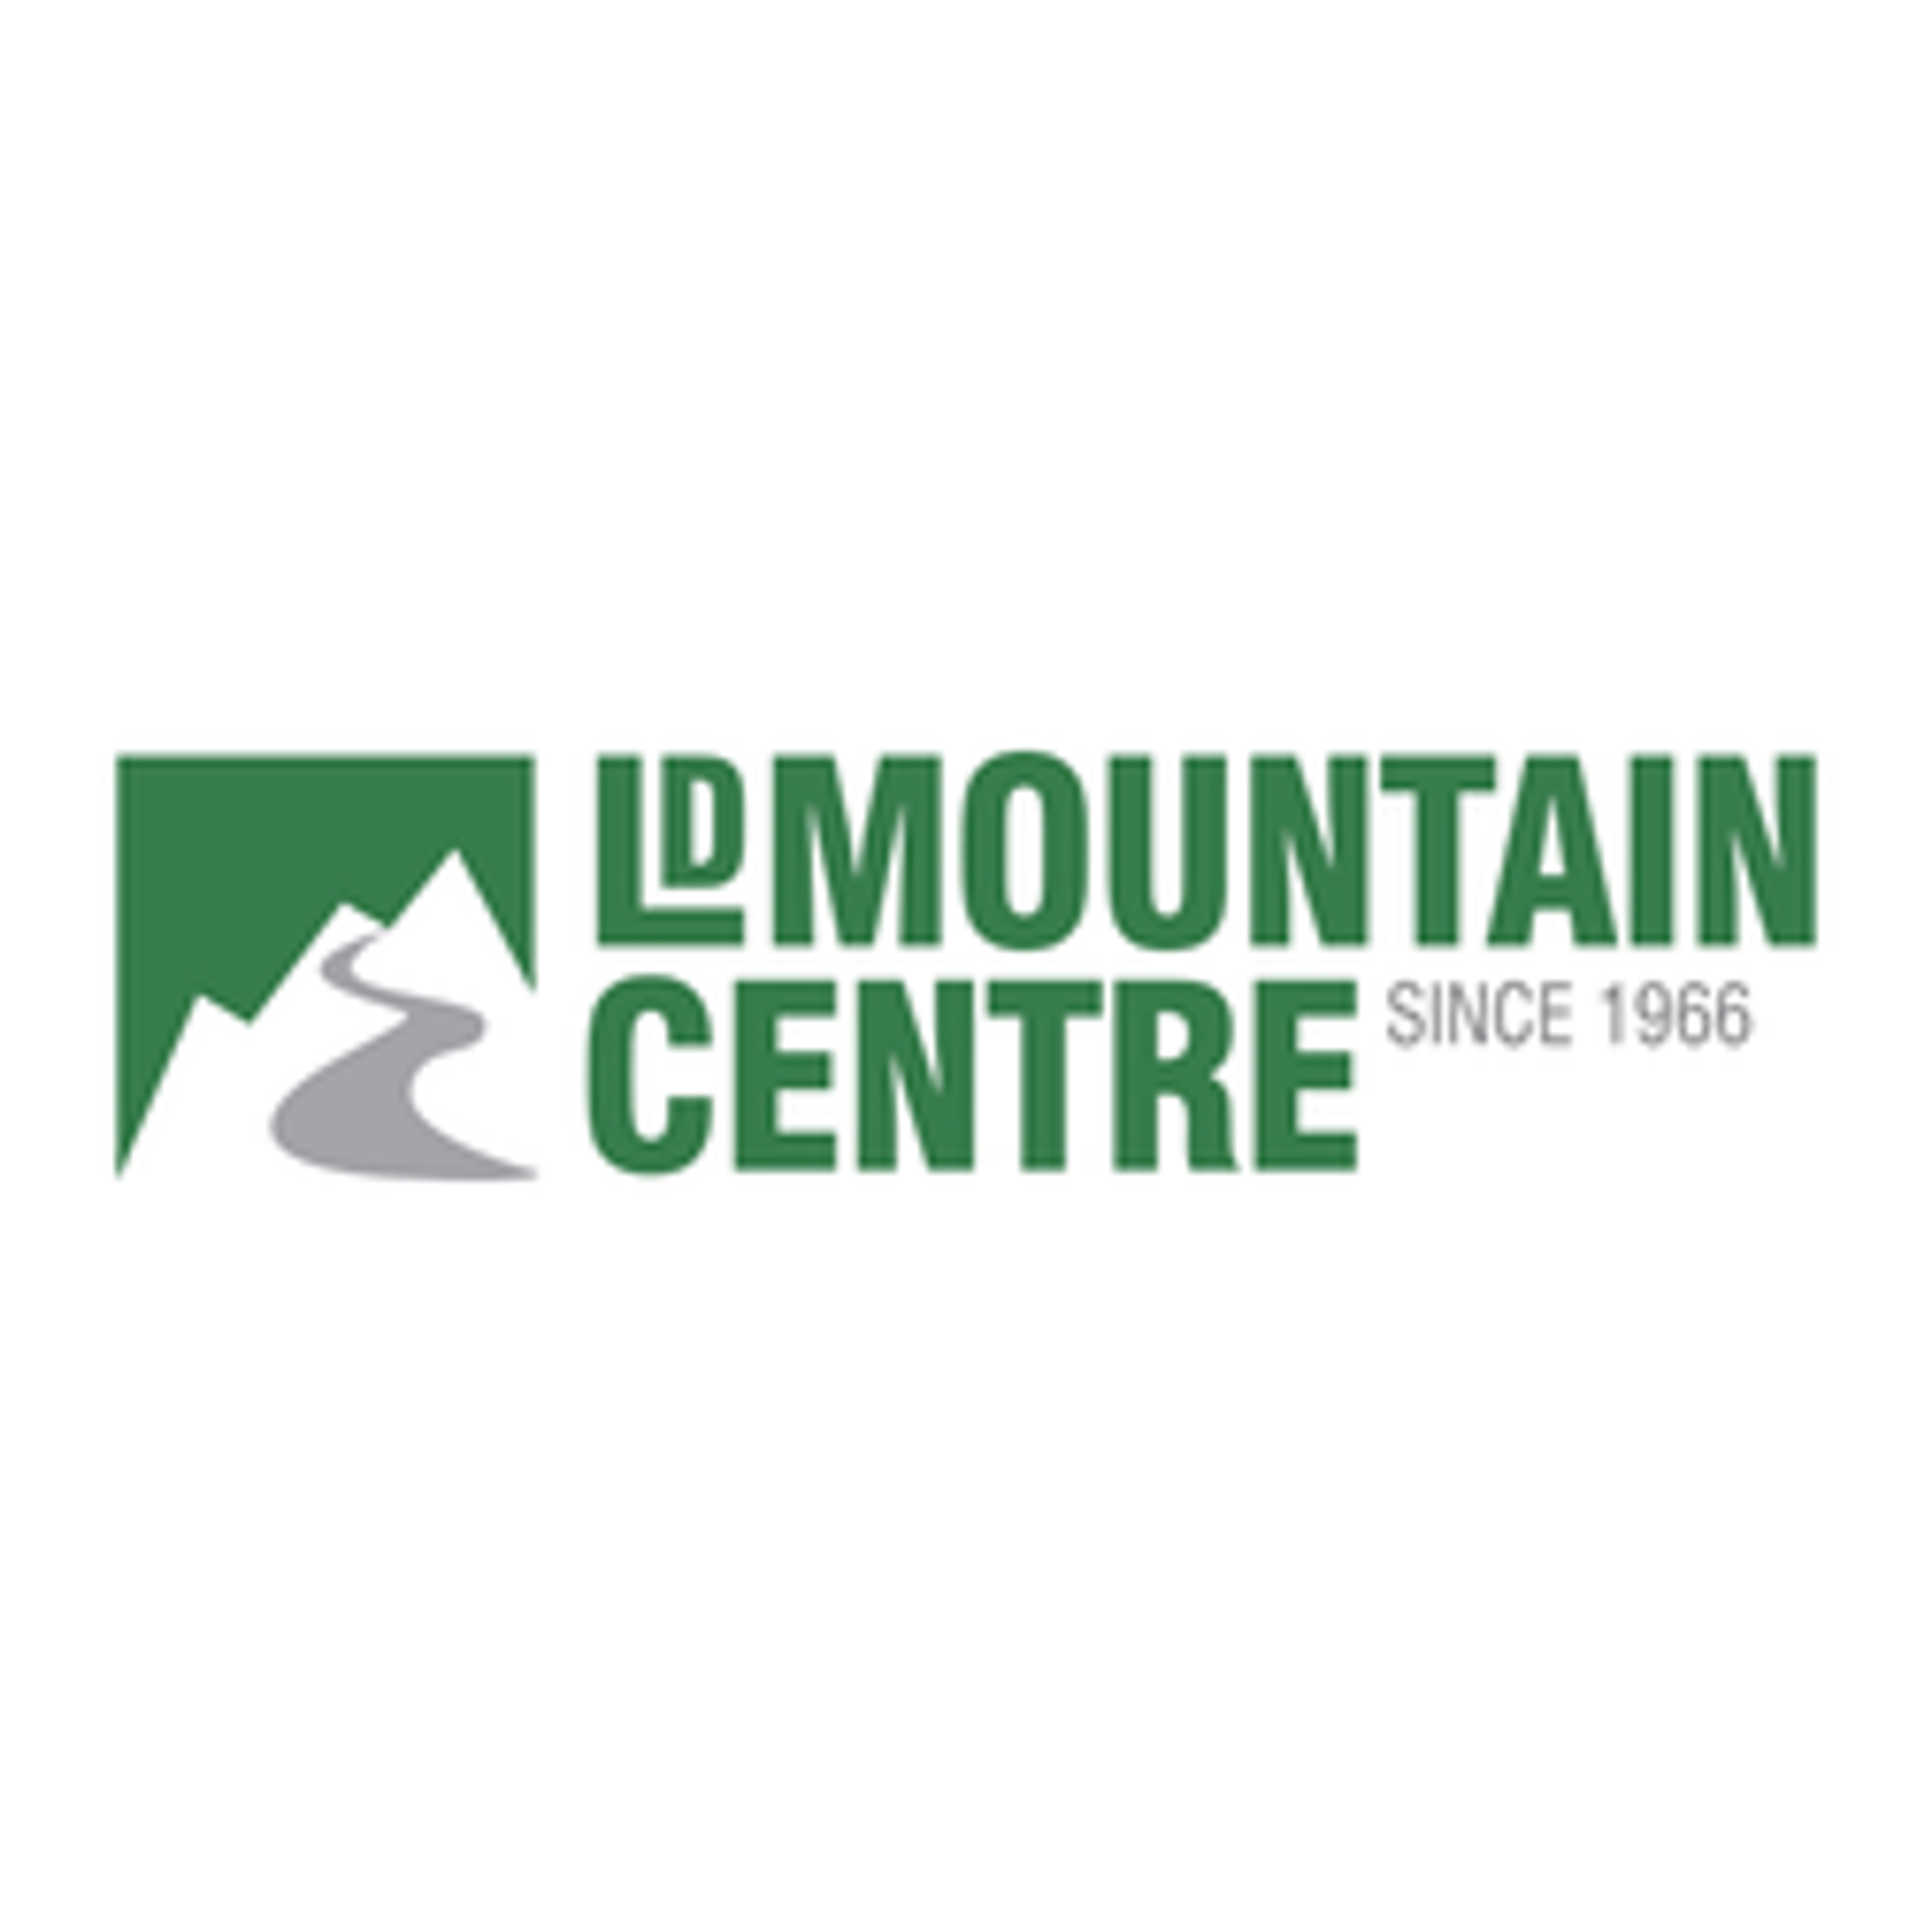  LD Mountain Centre 